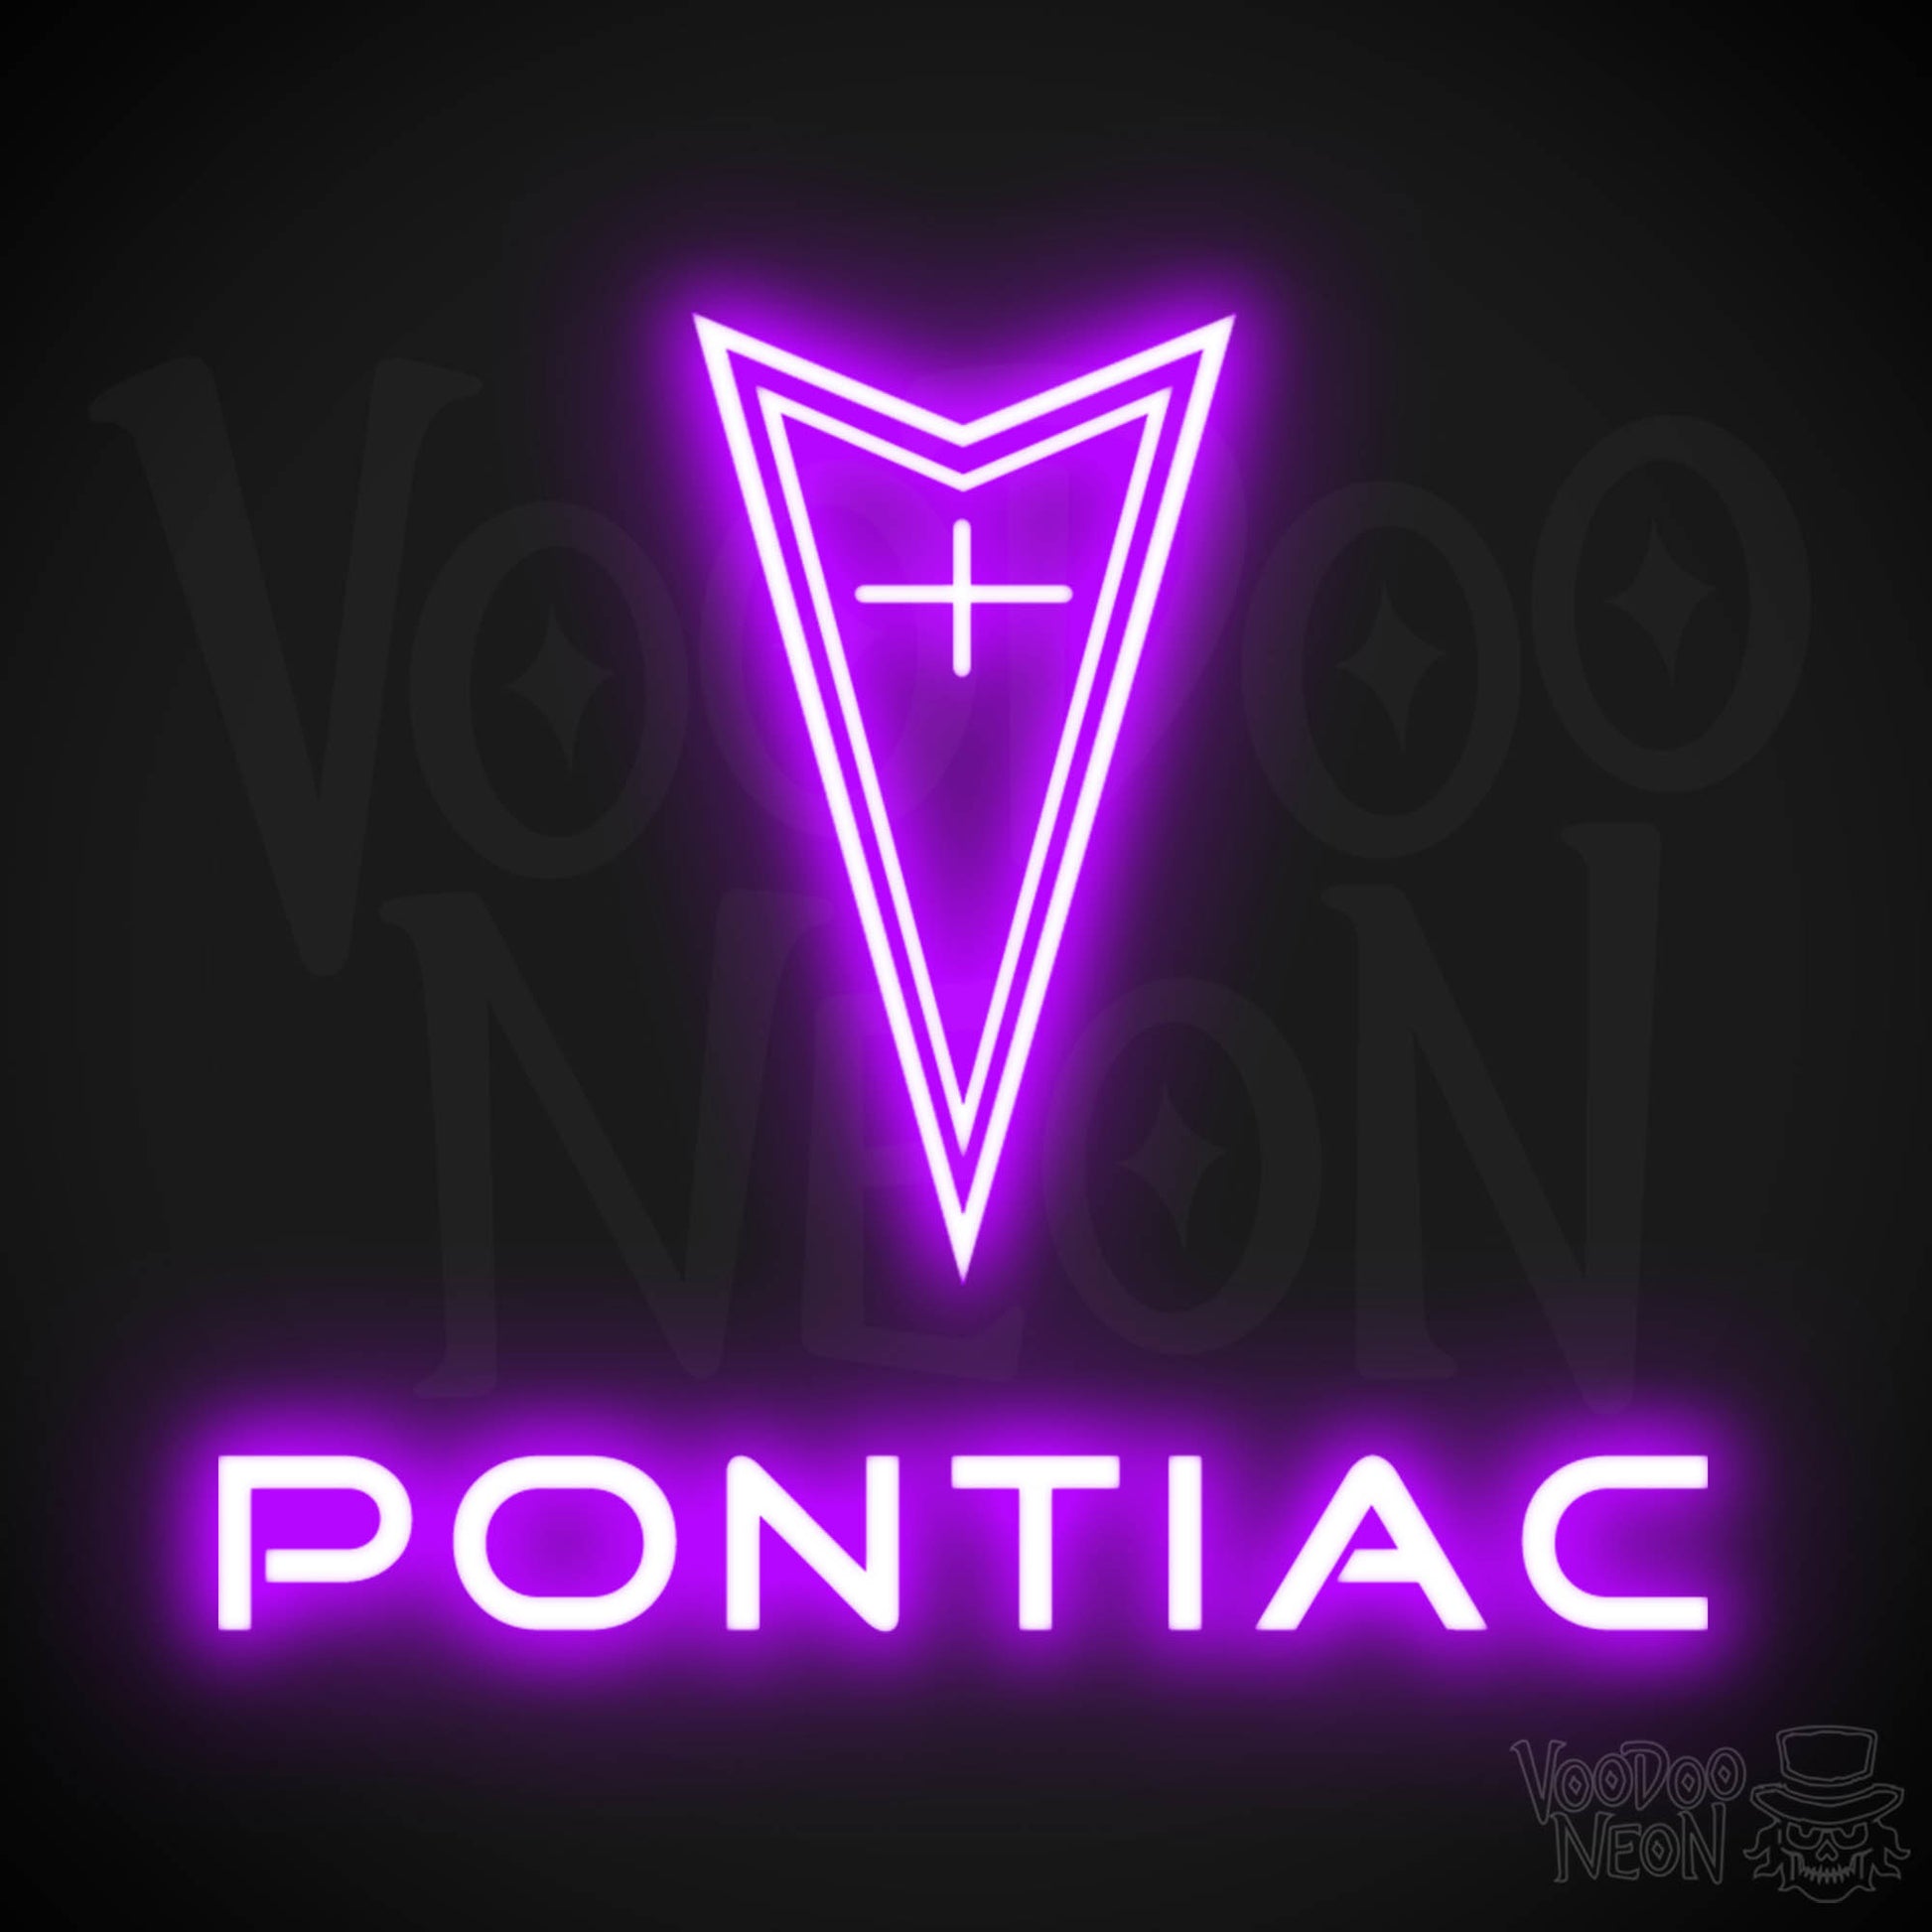 Pontiac Neon Sign - Pontiac Sign - Pontiac Decor - Wall Art - Color Purple